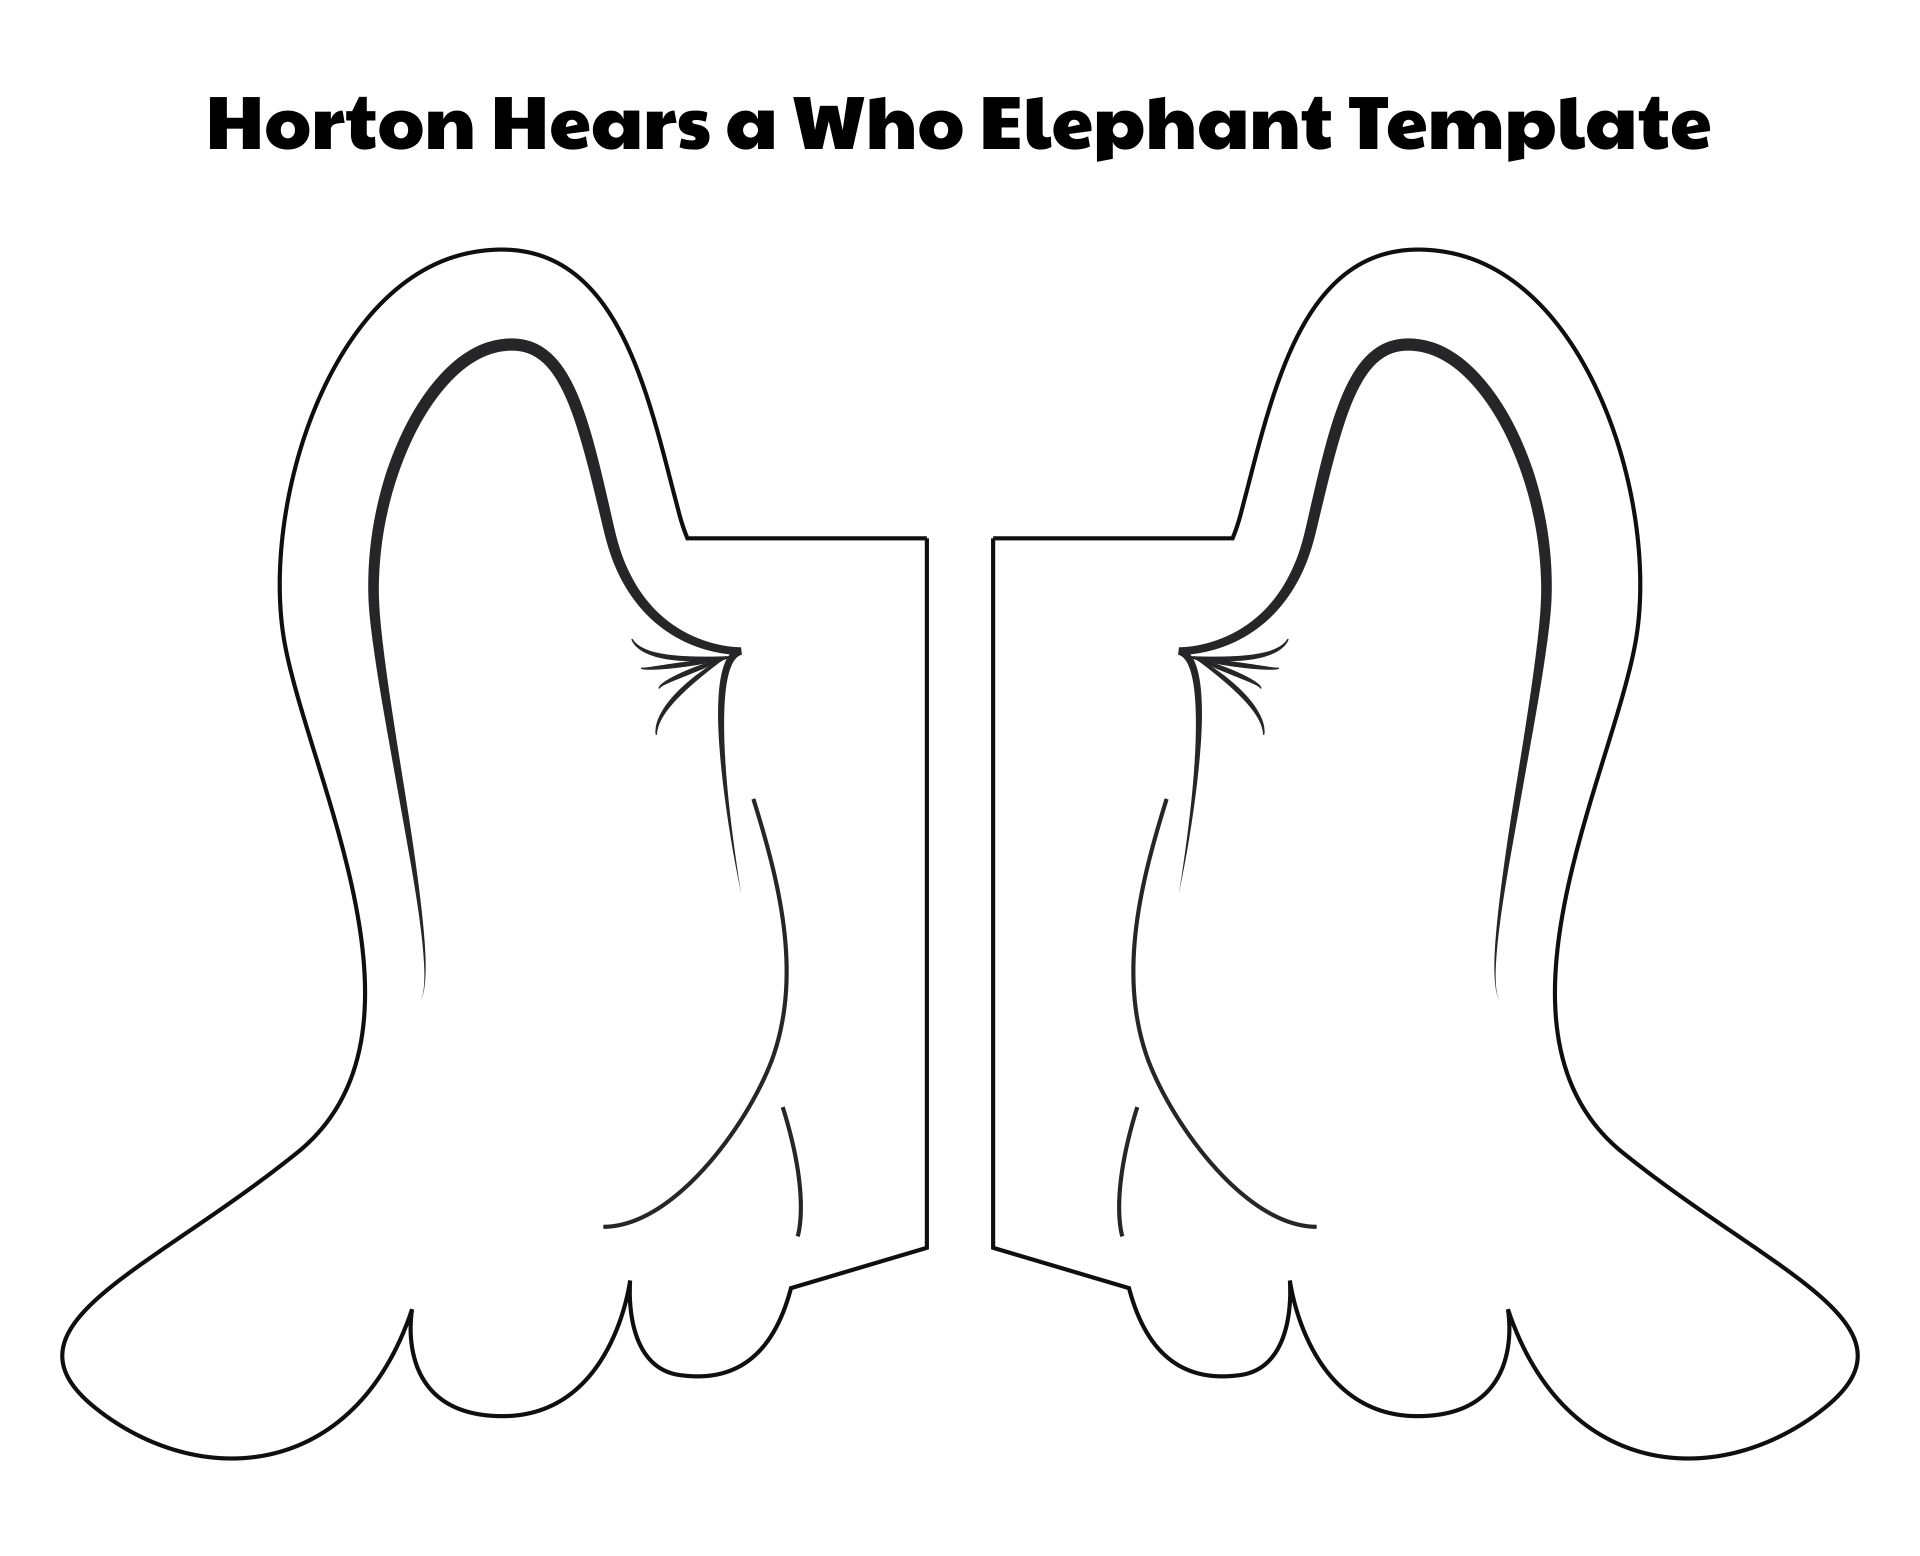 Horton Hears a Who Elephant Template